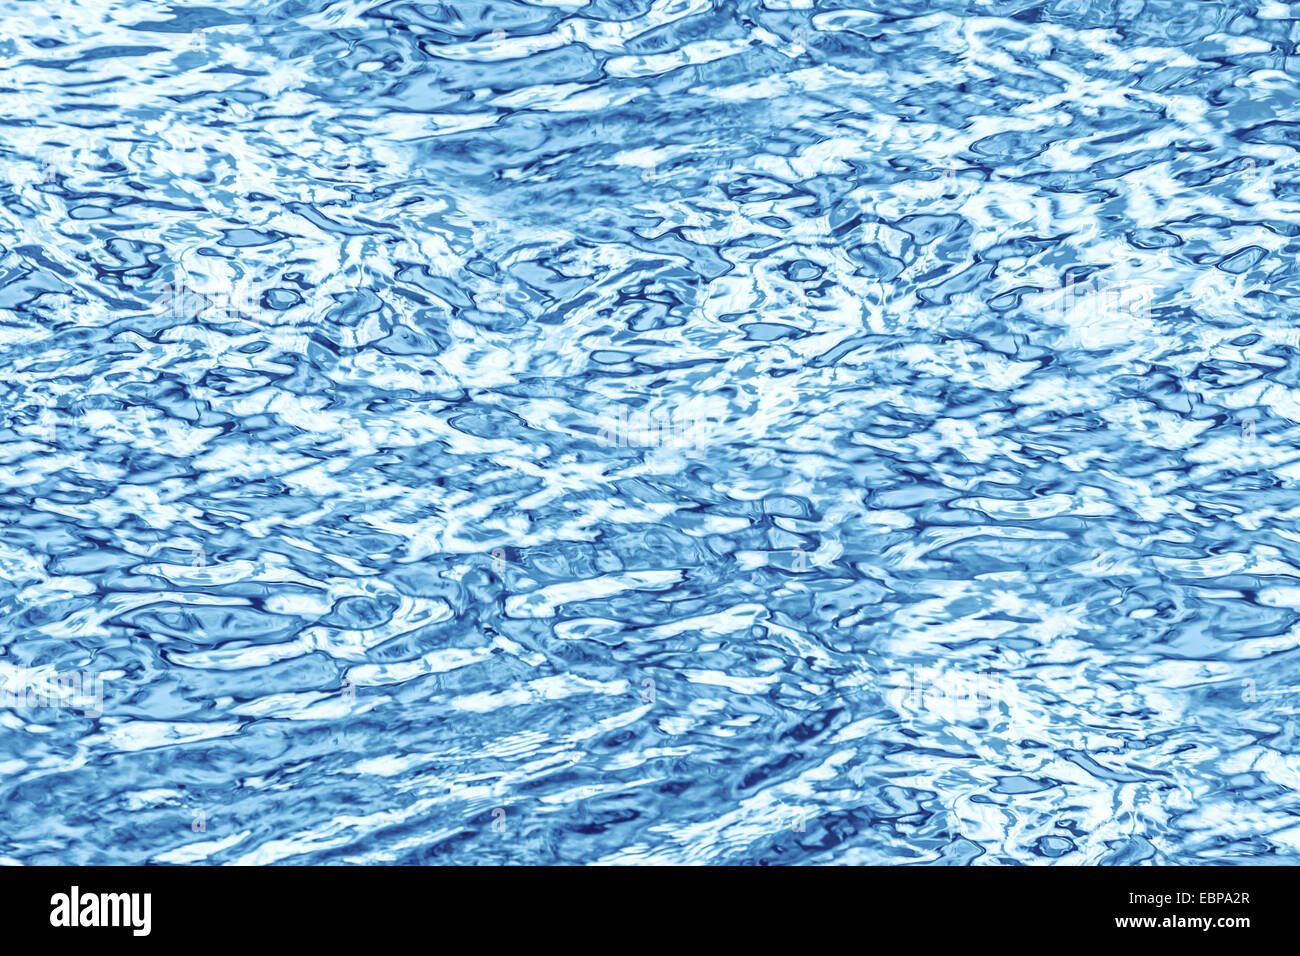 Zusammenfassung Hintergrund der Reflektionen im Wasser gemacht. Stockfoto